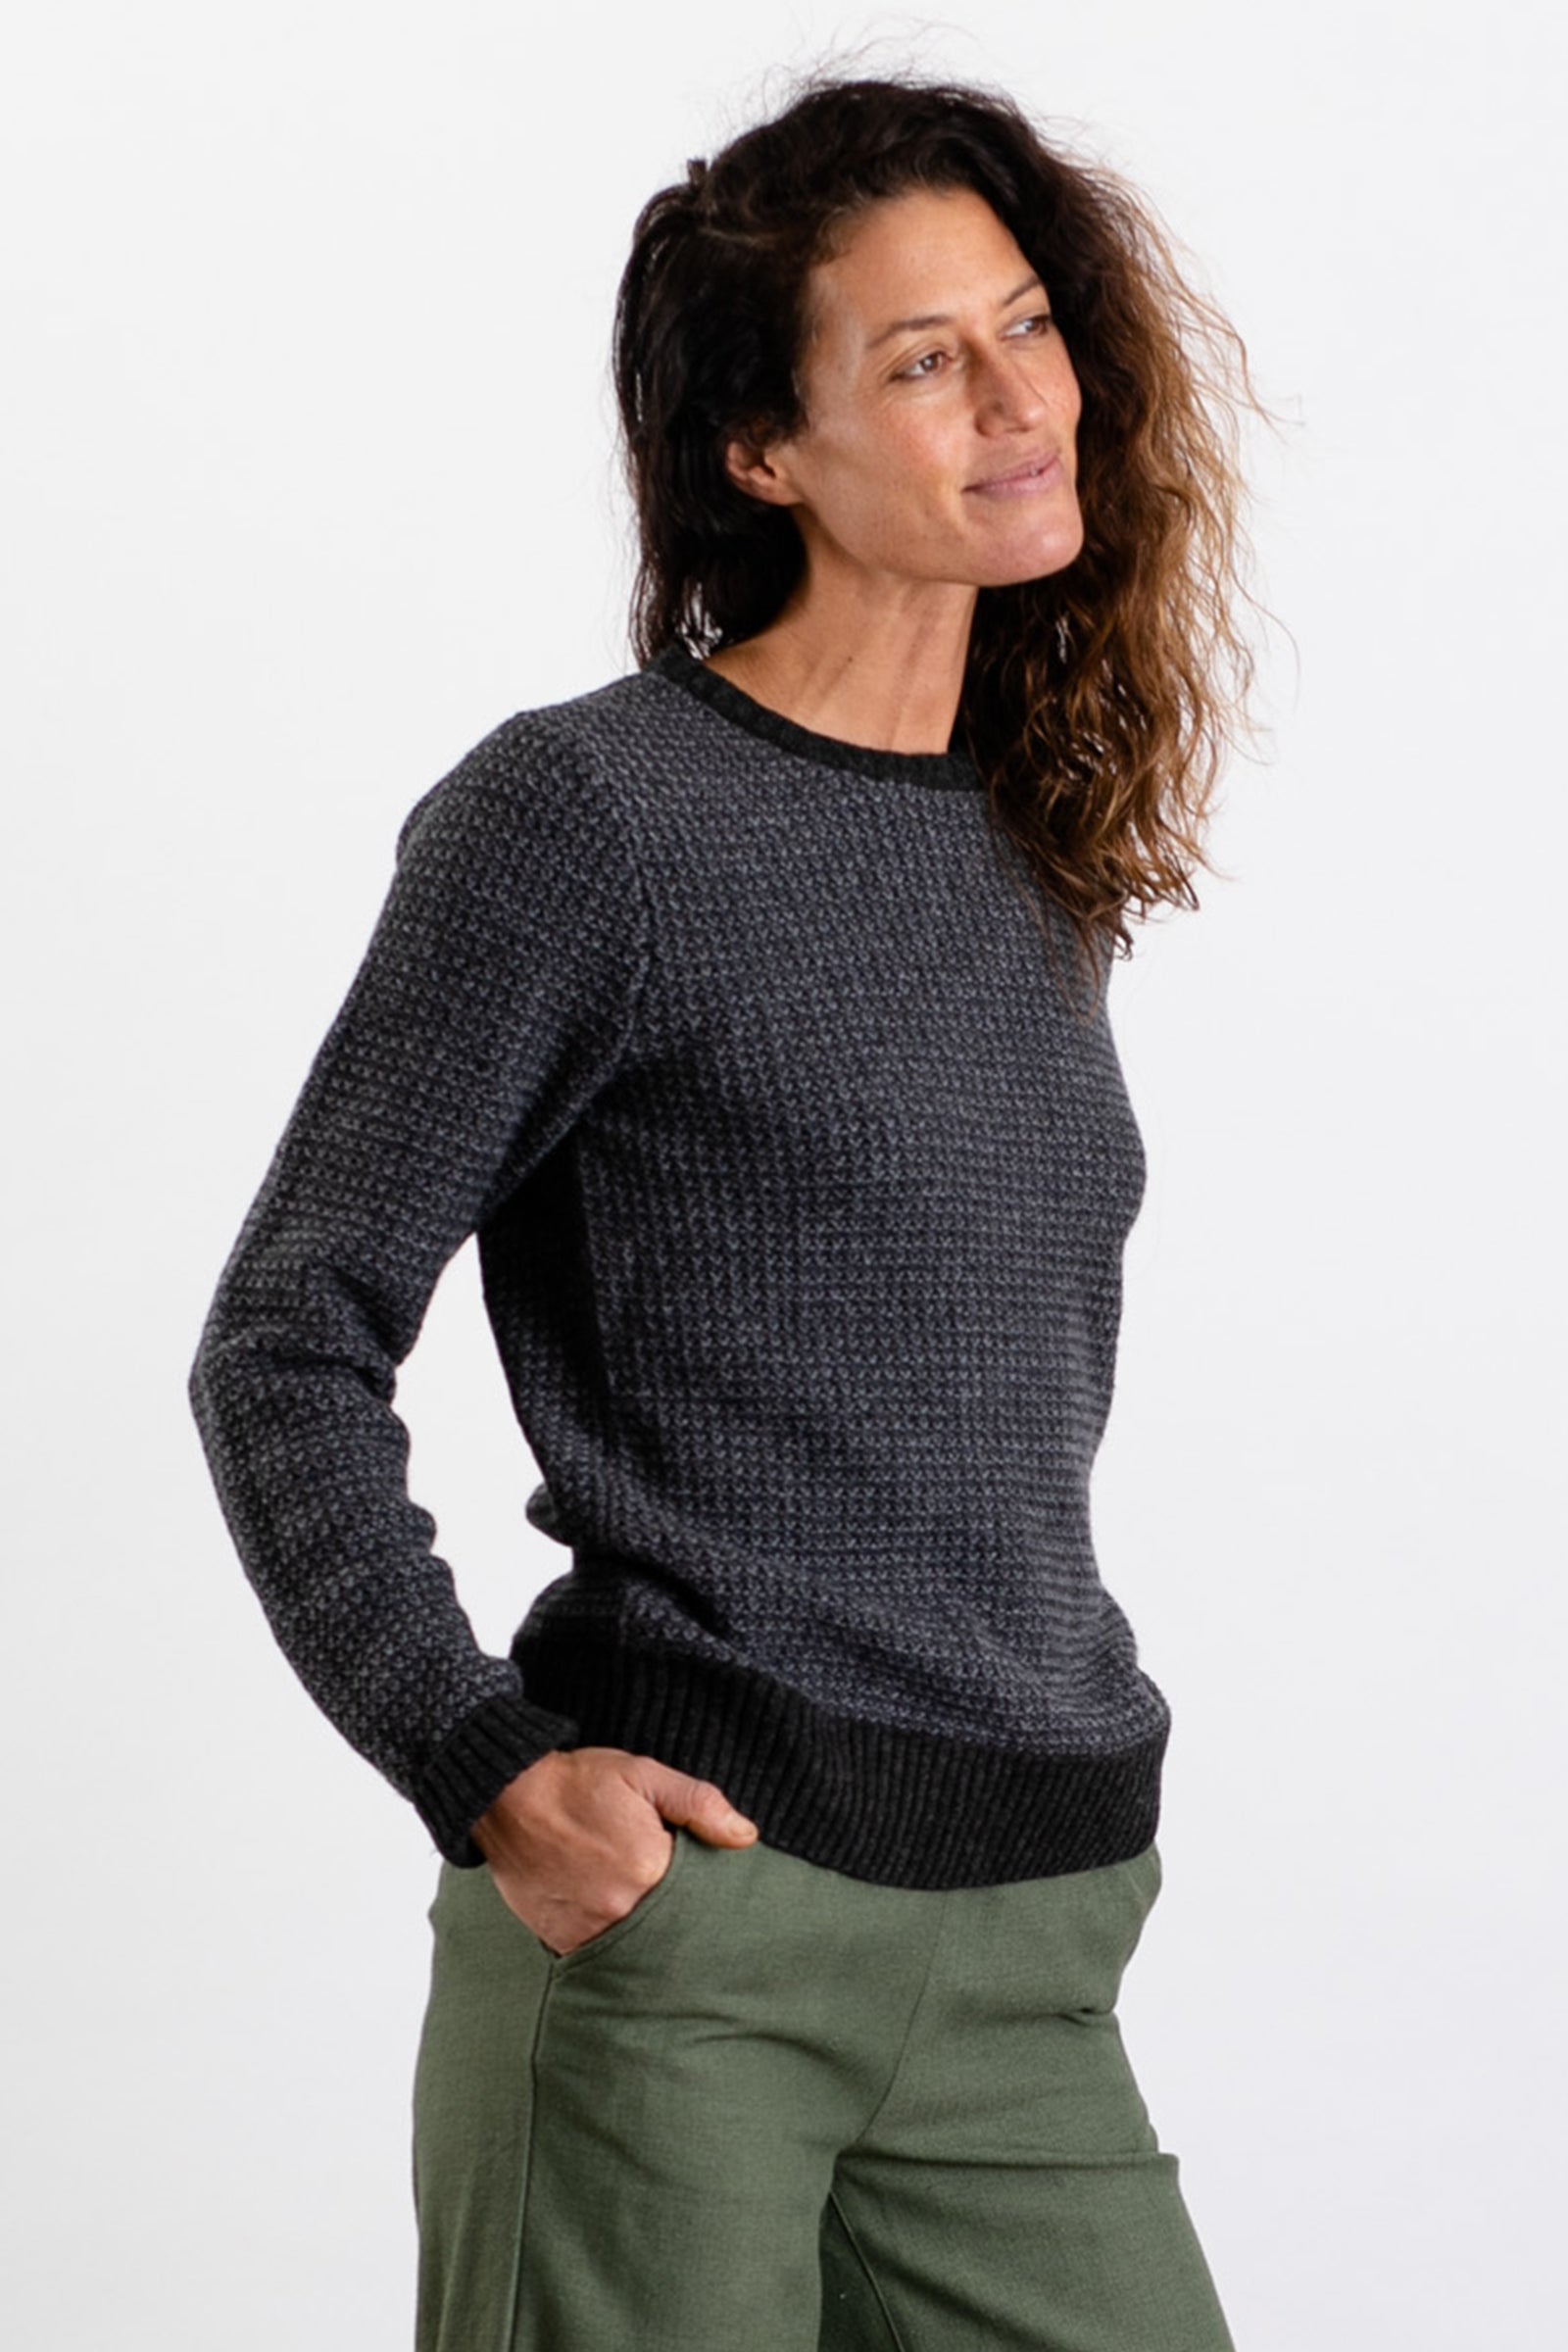 Chelan Sweater / Loden